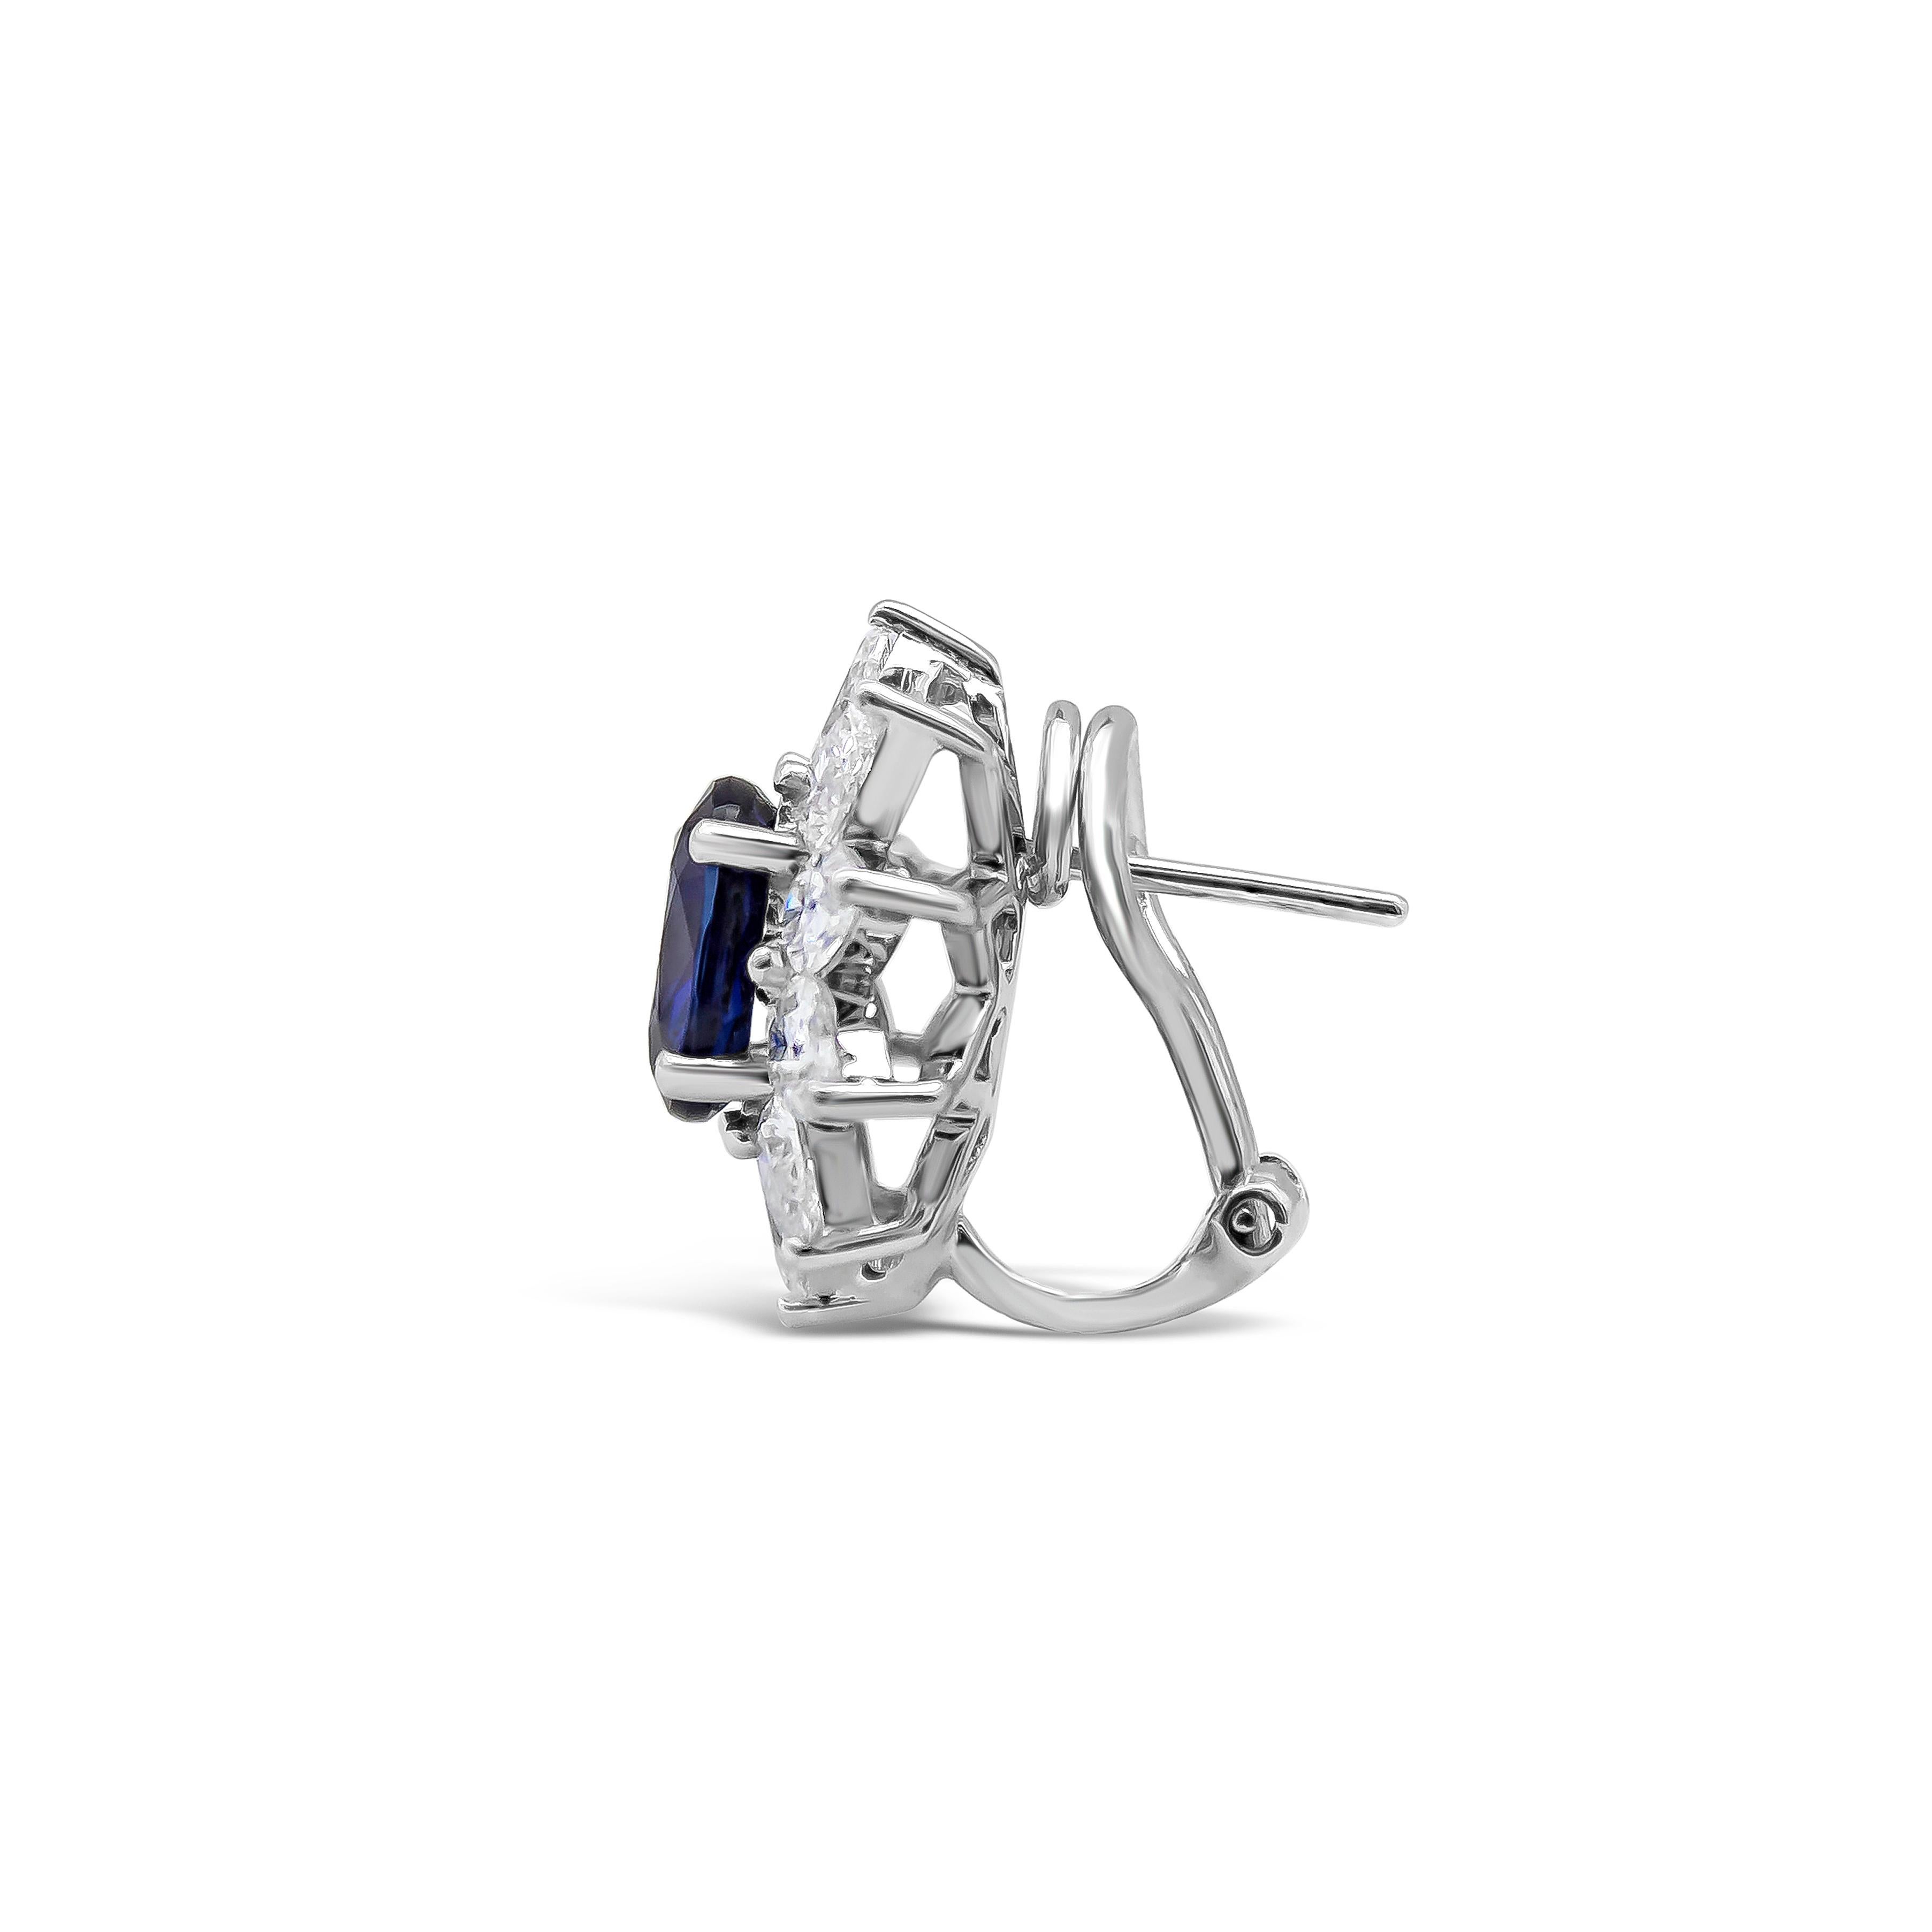 Präsentiert farbintensive blaue Saphire im Kissenschliff mit einem Gesamtgewicht von 4,43 Karat. Jeder Saphir ist von einer Reihe birnenförmiger Diamanten in einem floralen Design umgeben, Omega-Clipback. Die Diamanten wiegen insgesamt 3.17 Karat.